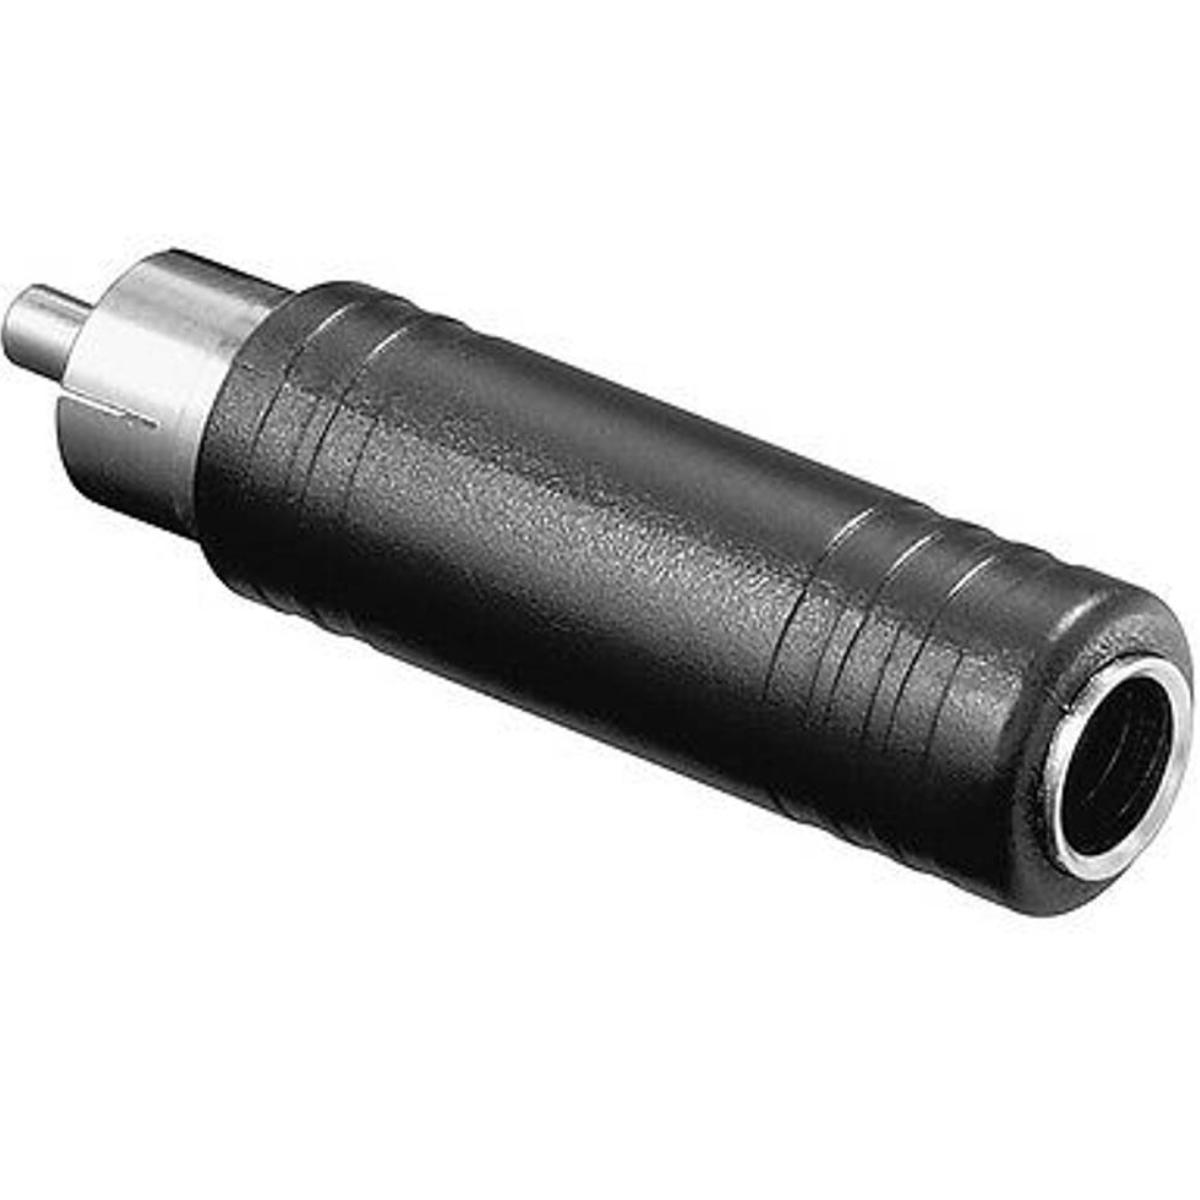 Klinkenstecker 6,3 mm Buchse Adapter - Goobay